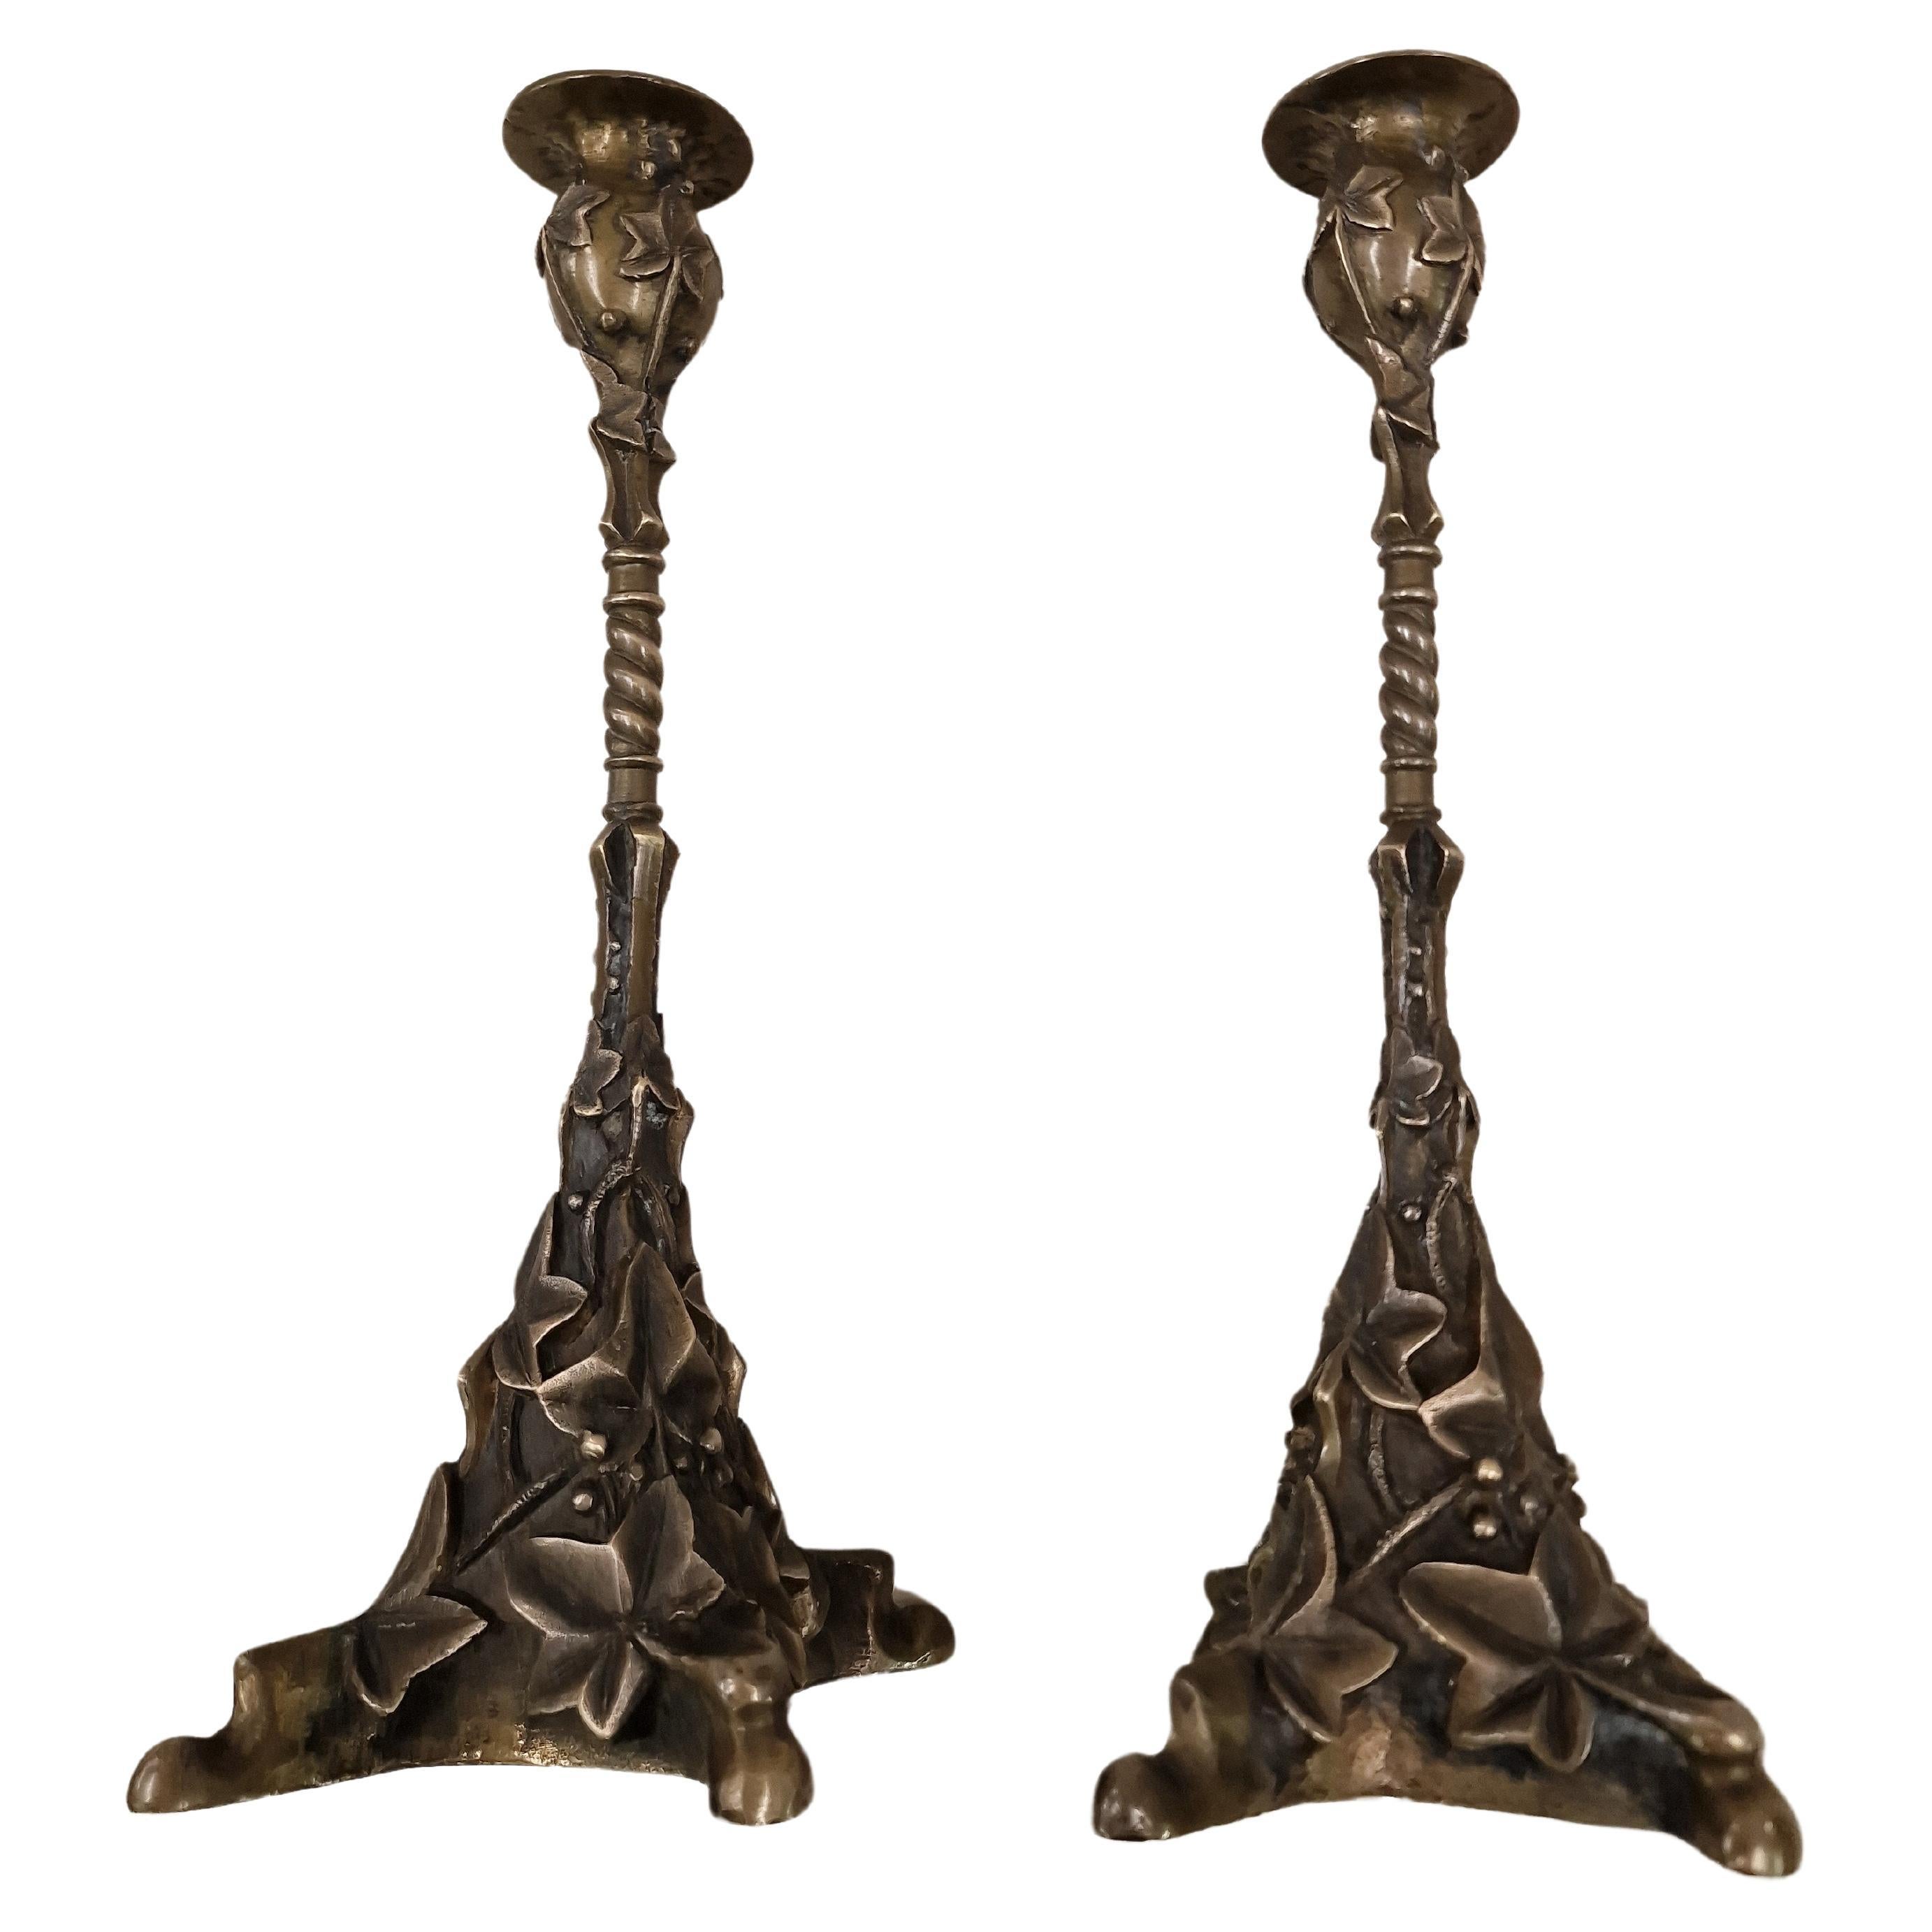 Sehr schönes Paar Kerzenständer aus massiver Bronze, reich verziert, um 1890. Dies ist ein beeindruckendes Stück Handwerkskunst, das detaillierte Dekor und die schwere Qualität zeigen die Spezialität.

Der unregelmäßige Sockel mit zwei kurzen und